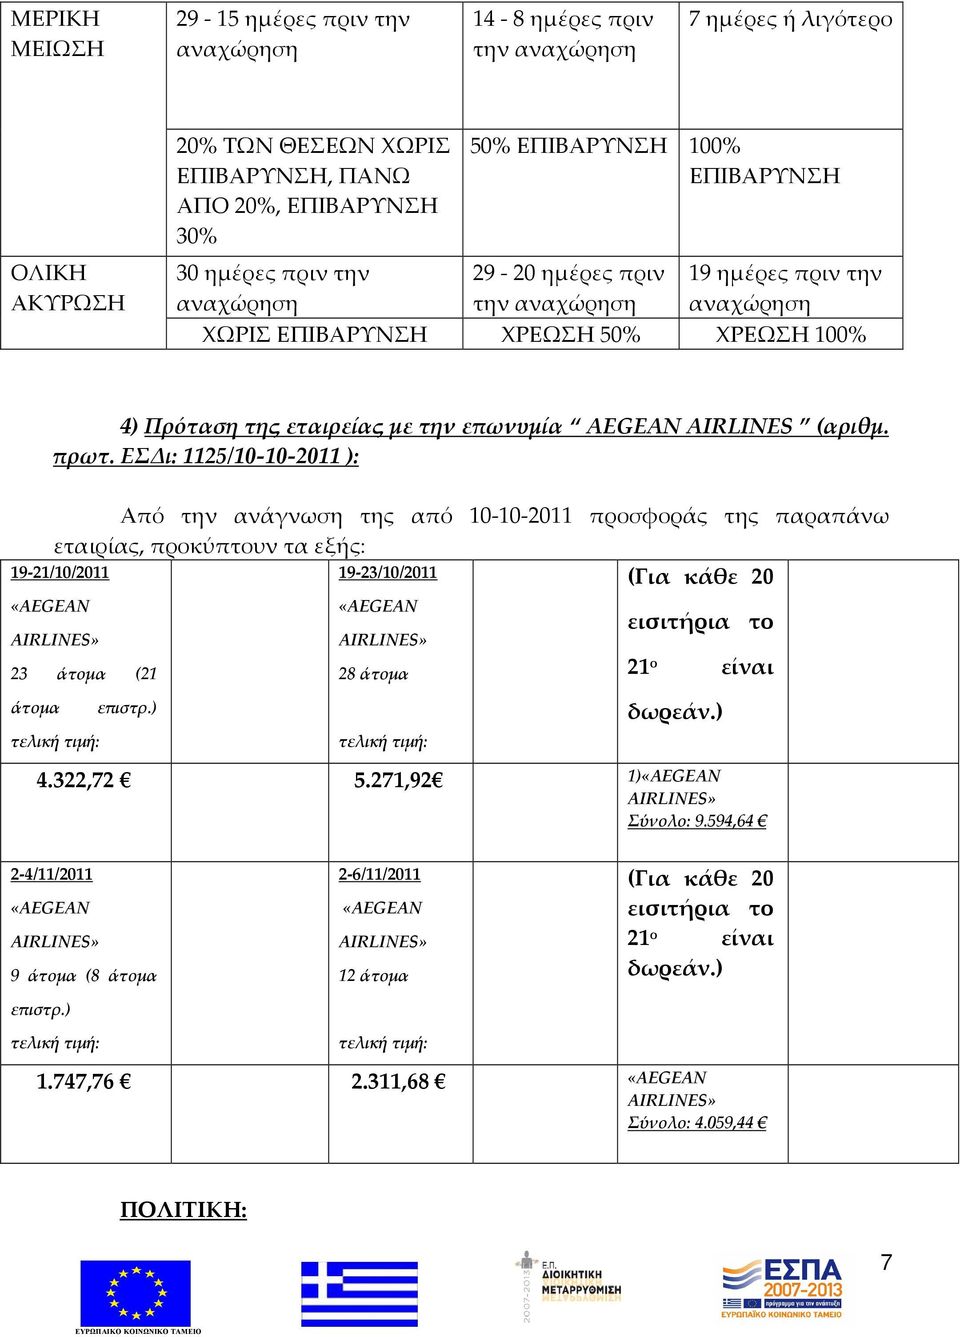 4) Πρόταση της εταιρείας με την επωνυμία AEGEAN AIRLINES (αριθμ. πρωτ.